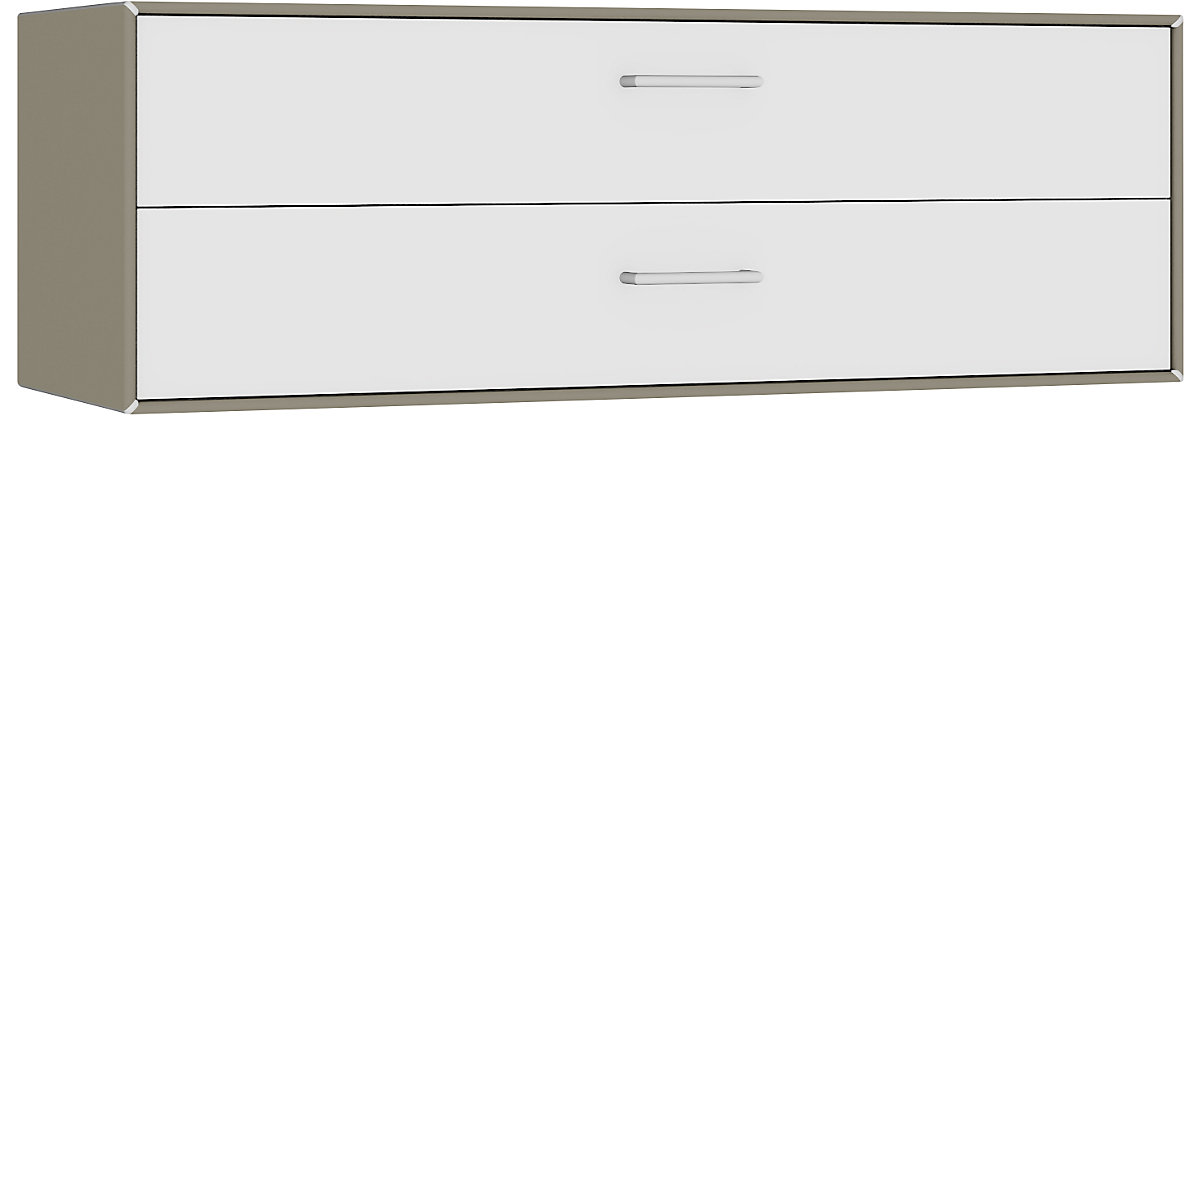 Cuie individuală, suspendată – mauser, 2 sertare, lățime 1155 mm, gri-bej / alb pur-5